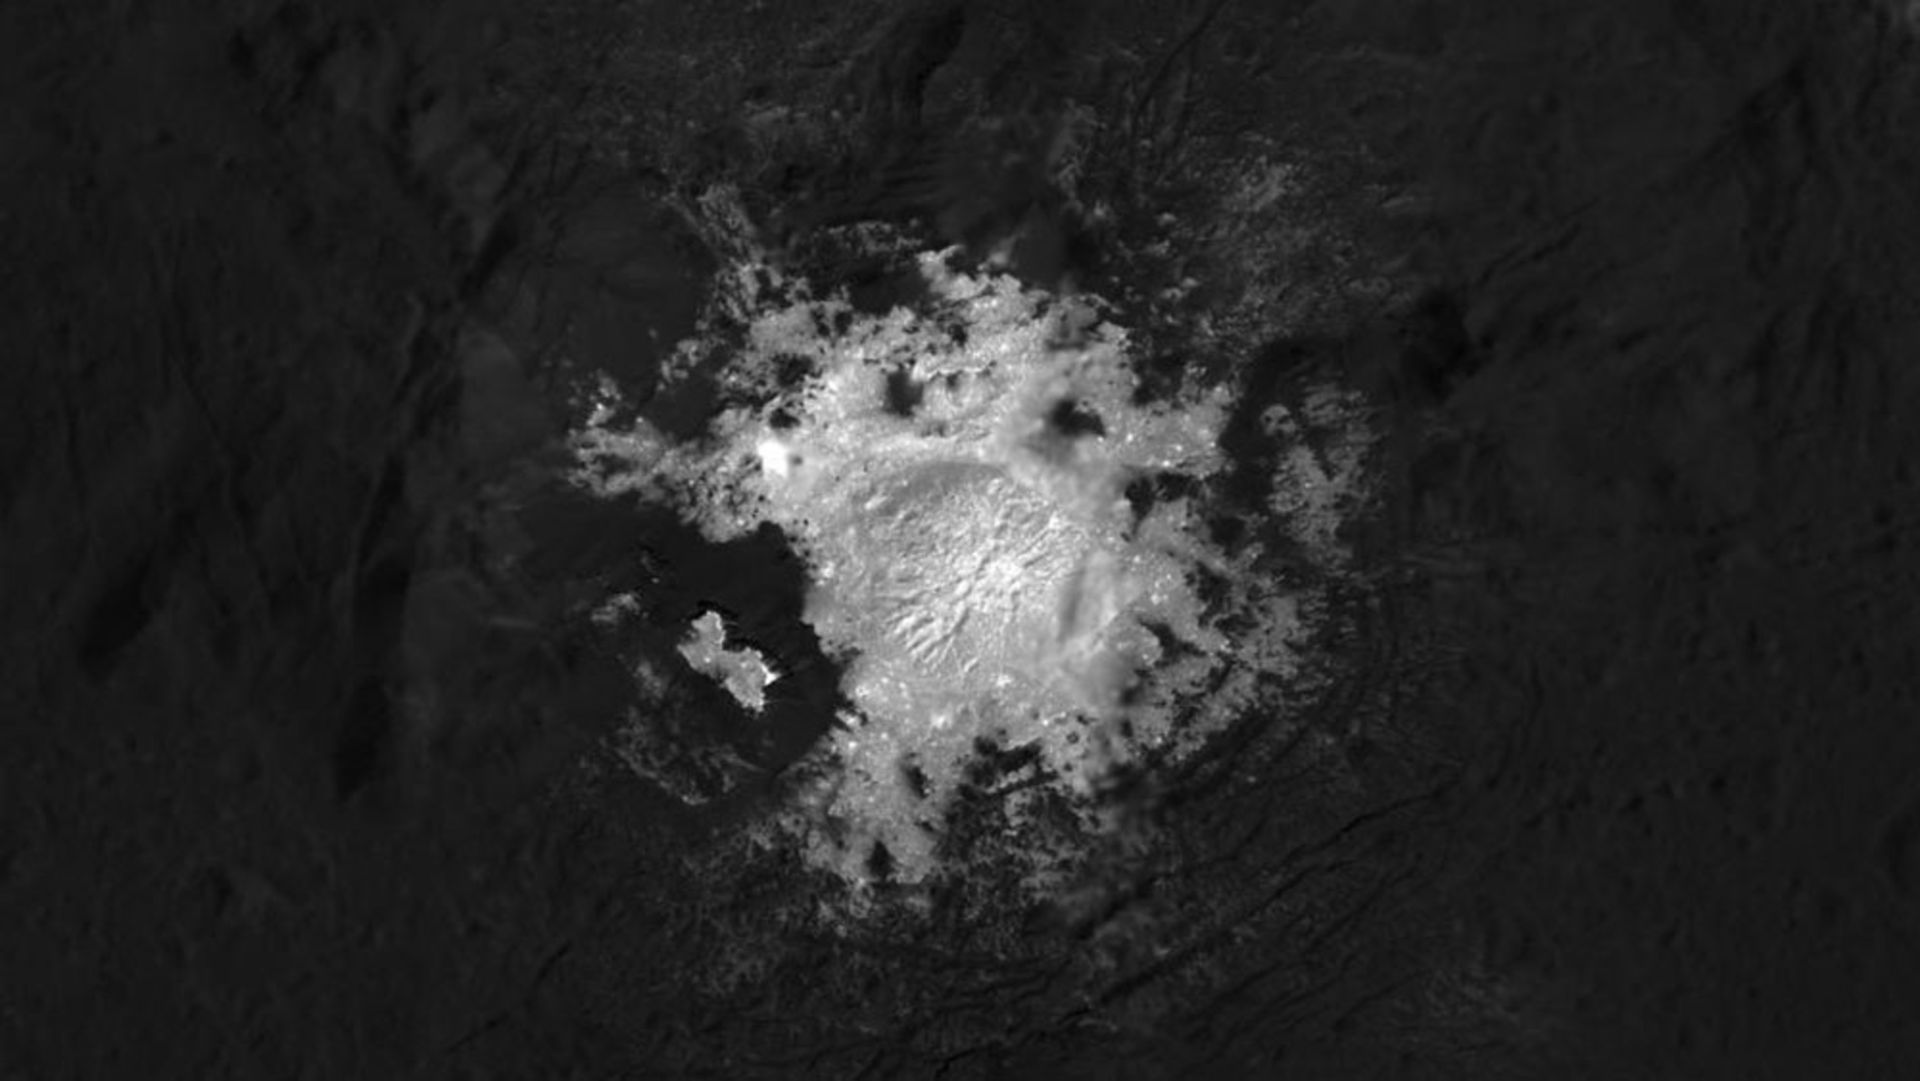 Ocator impact crater